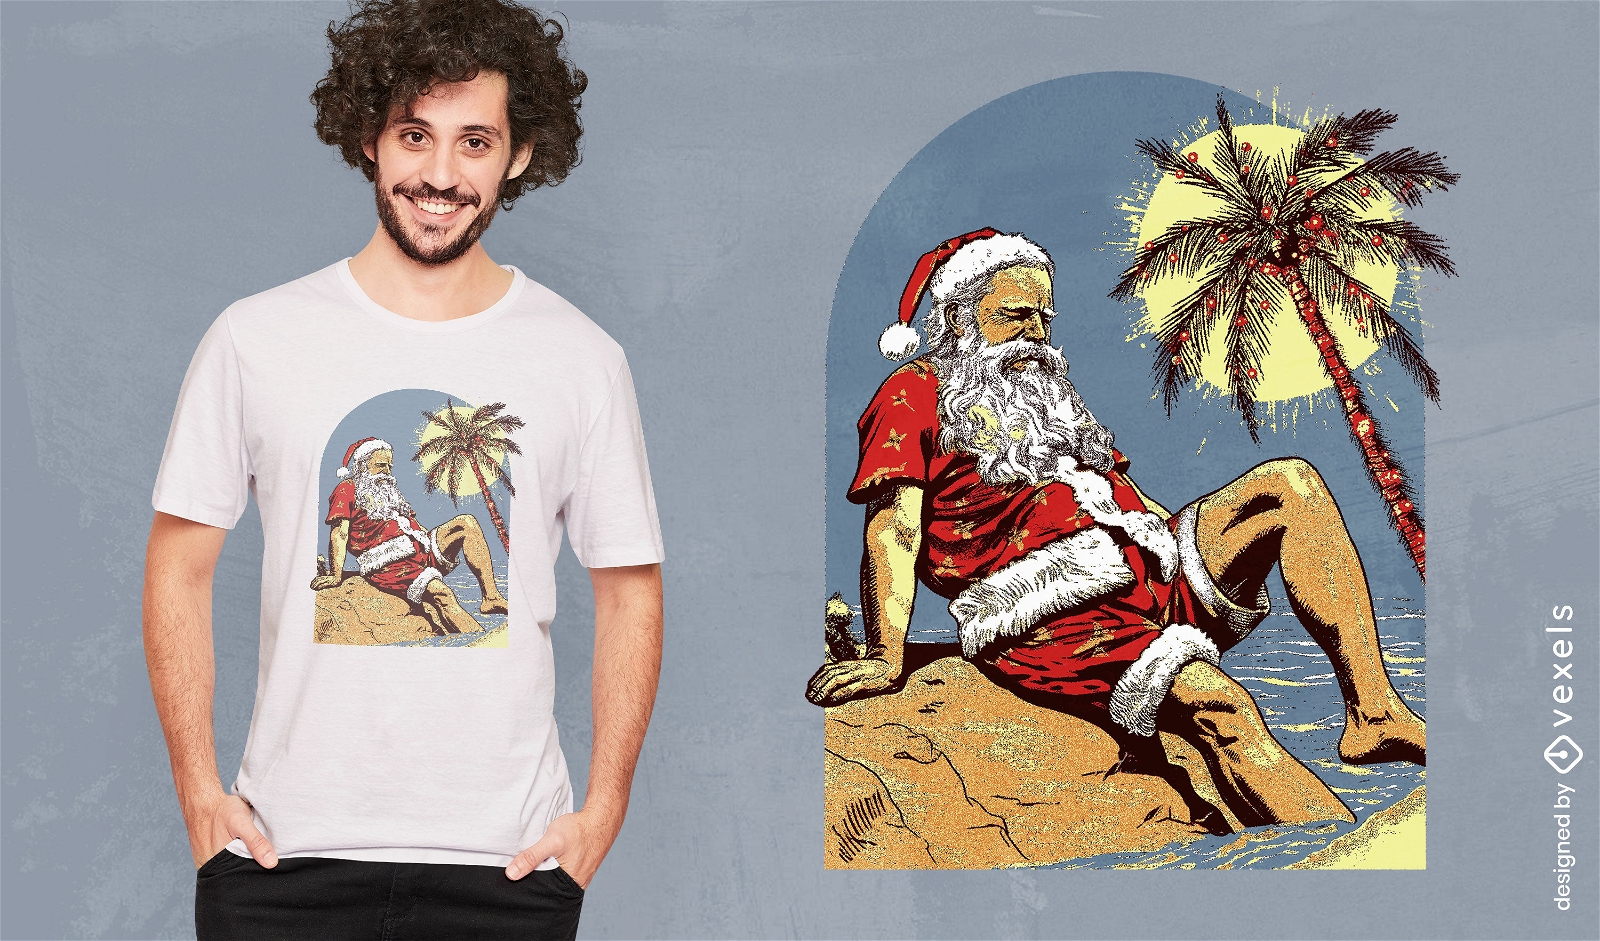 Tropical Santa Claus at the beach t-shirt design